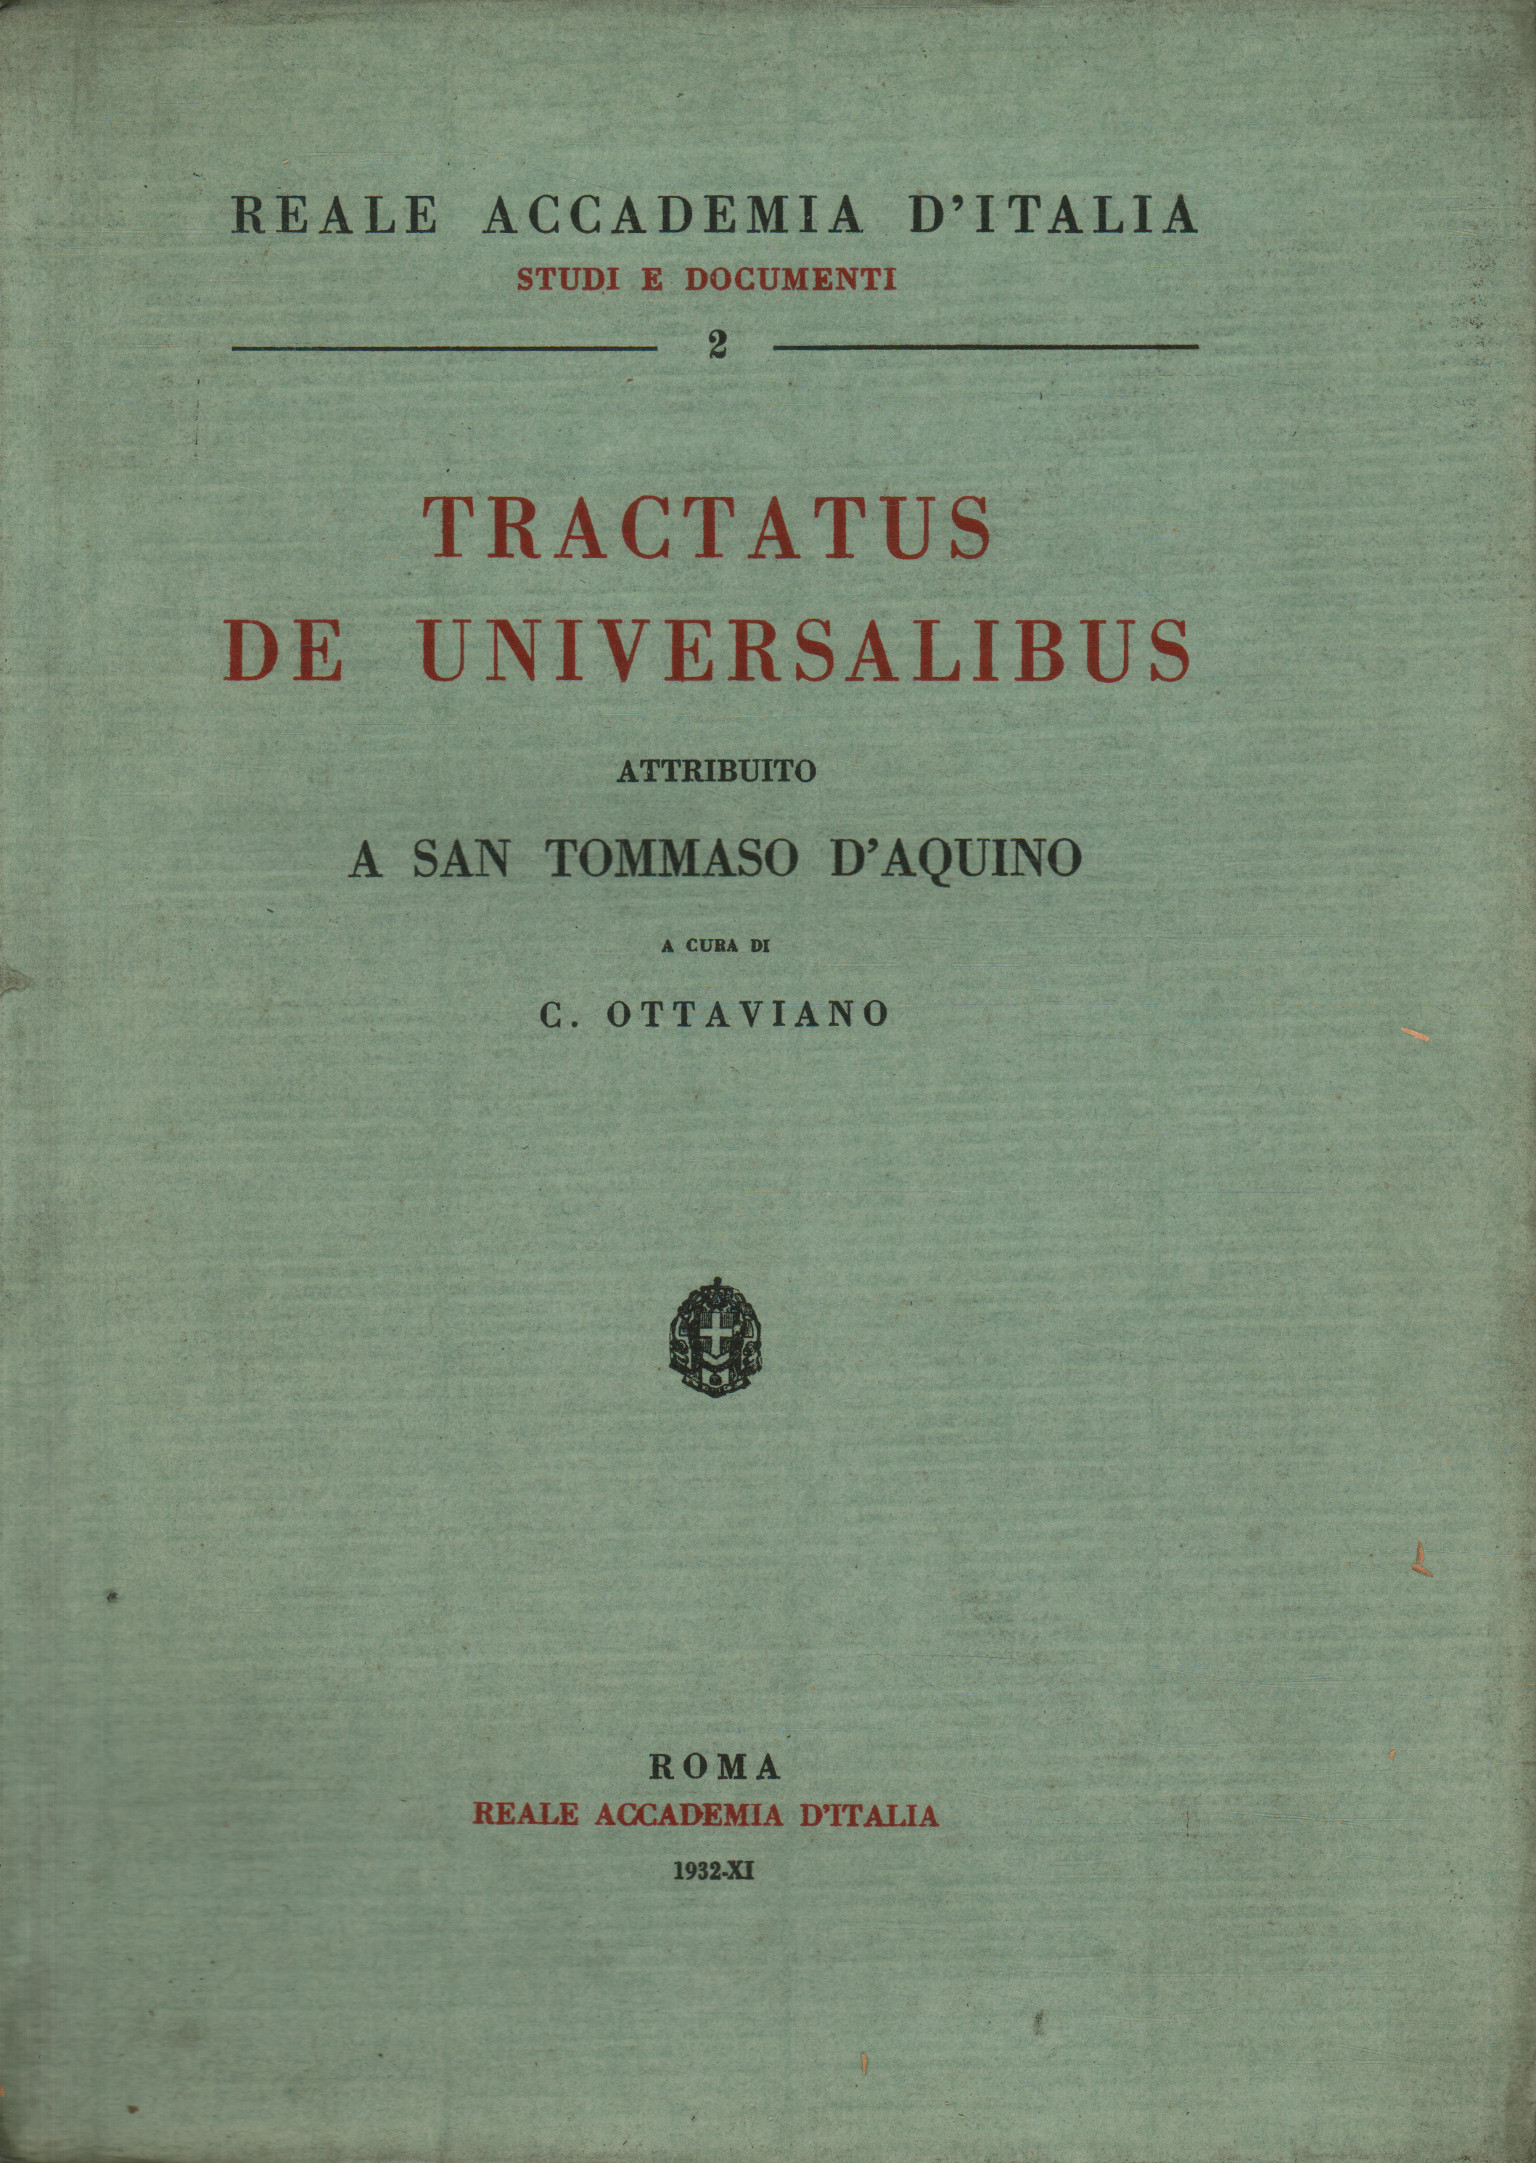 Tractatus de Universalibus attributed to